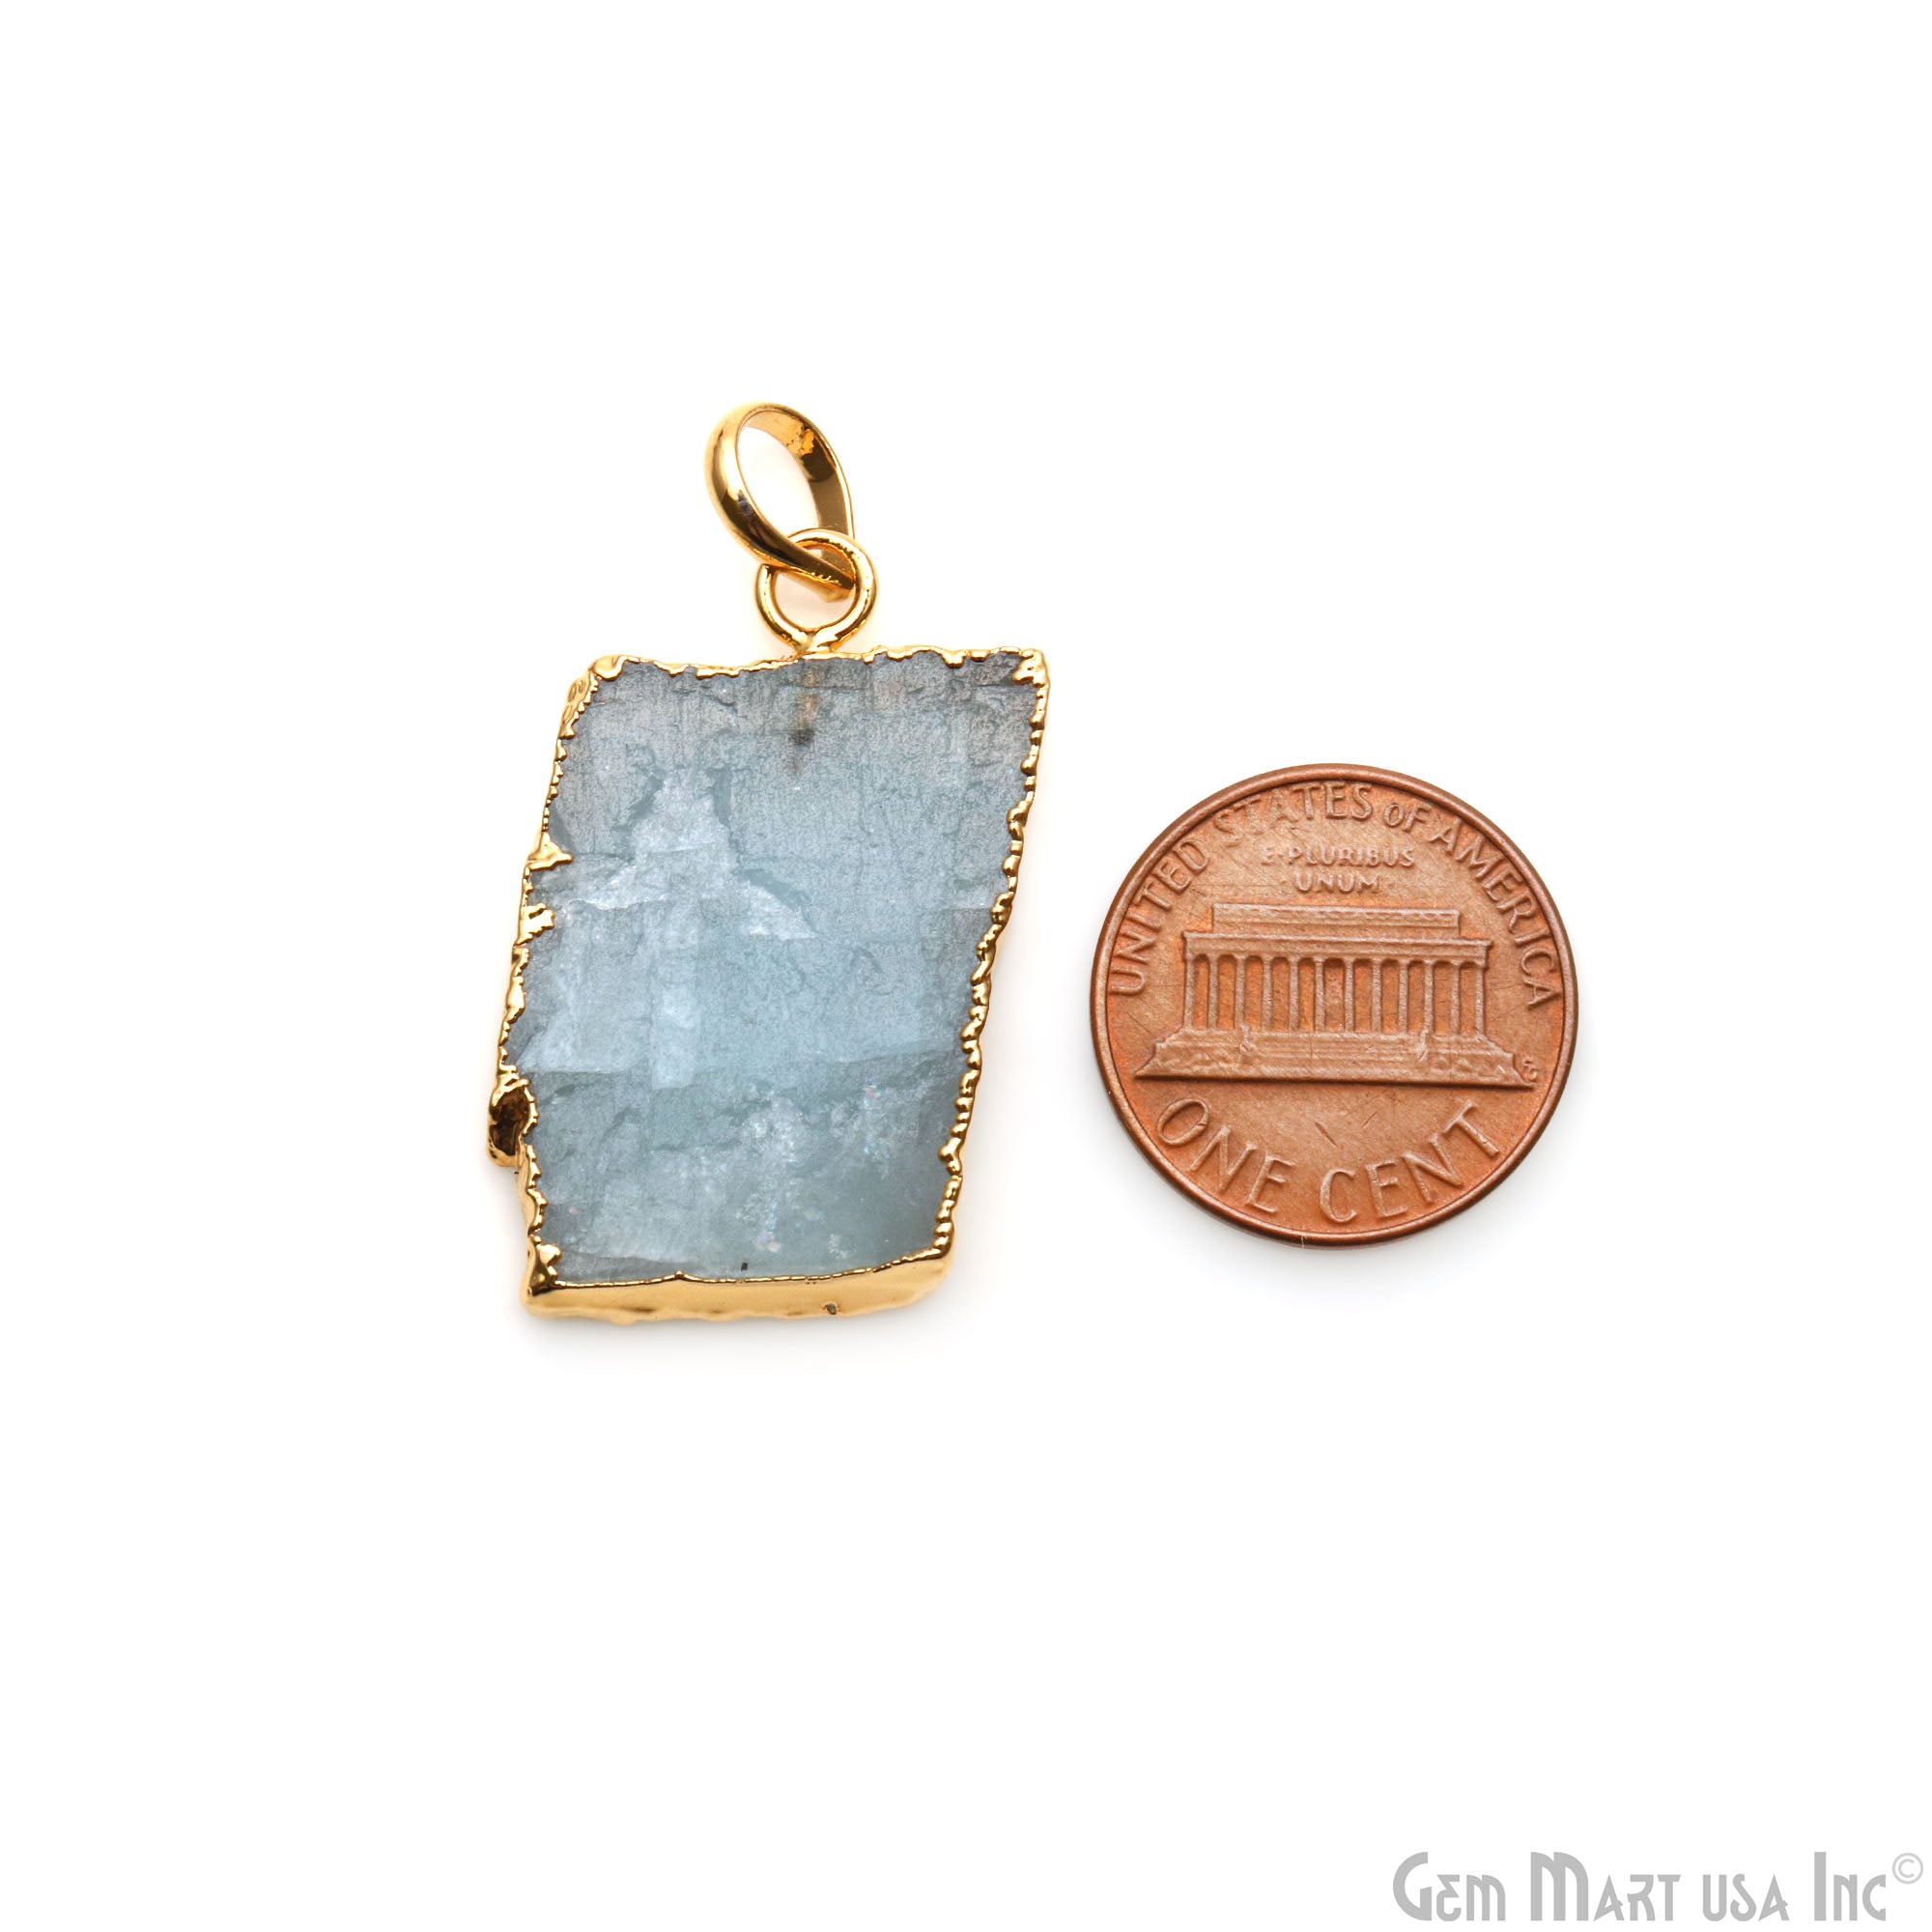 Aquamarine Free Form shape 31x18mm Gold Electroplated Gemstone Single Bail Pendant